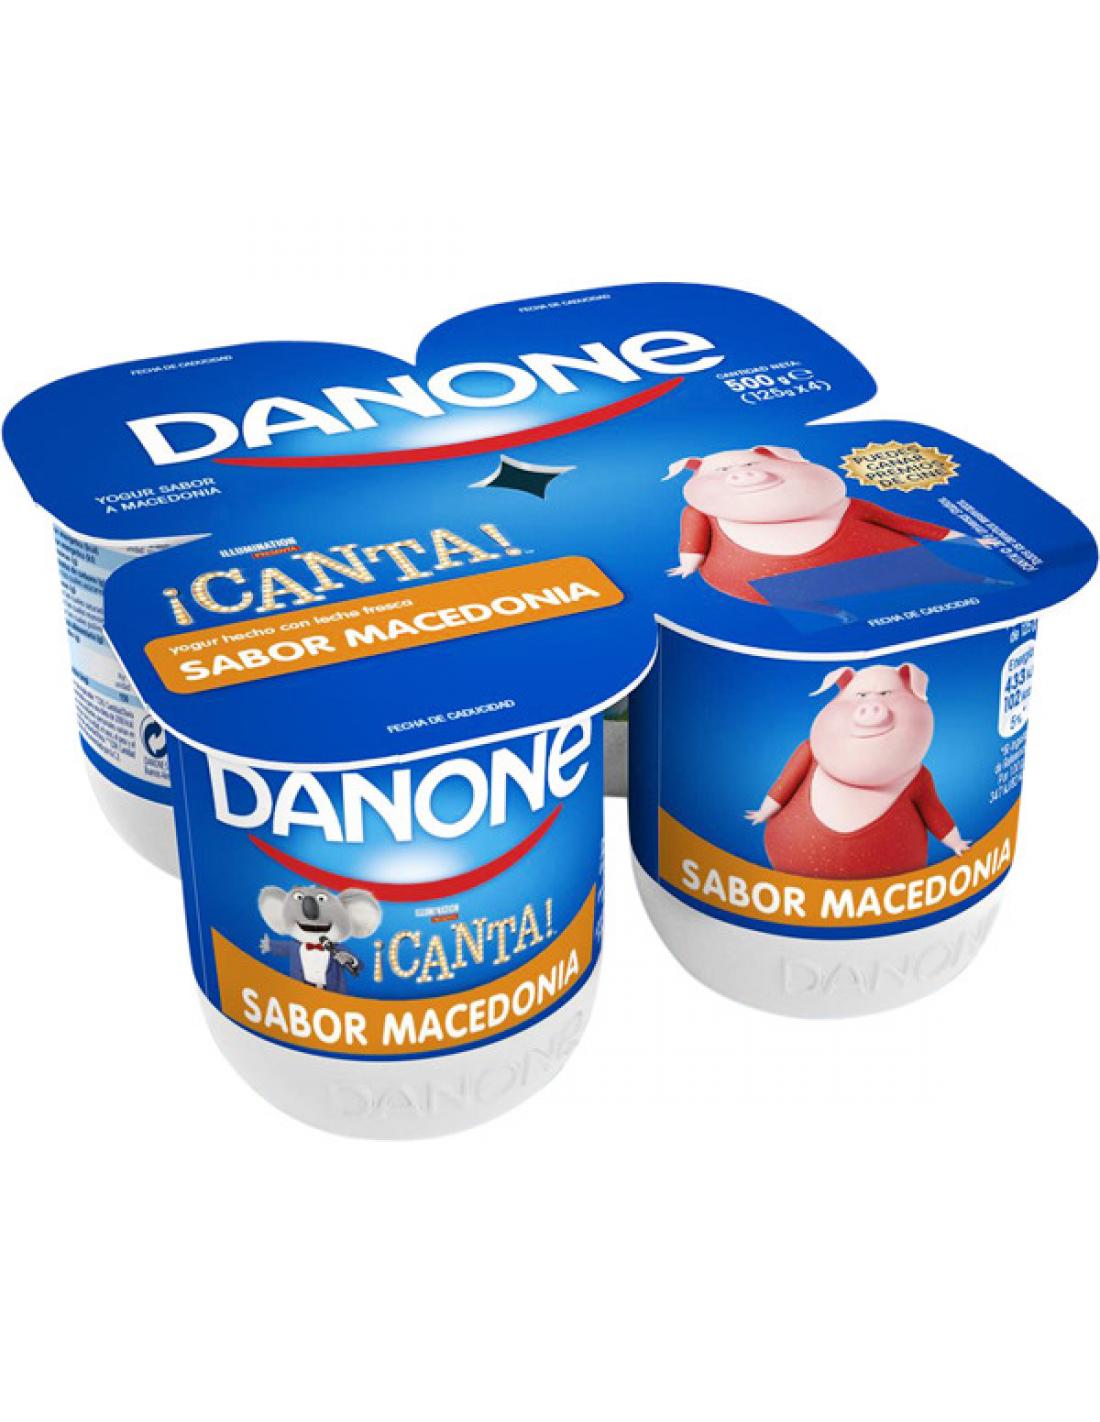 Yogur macedonia danone (pack 4